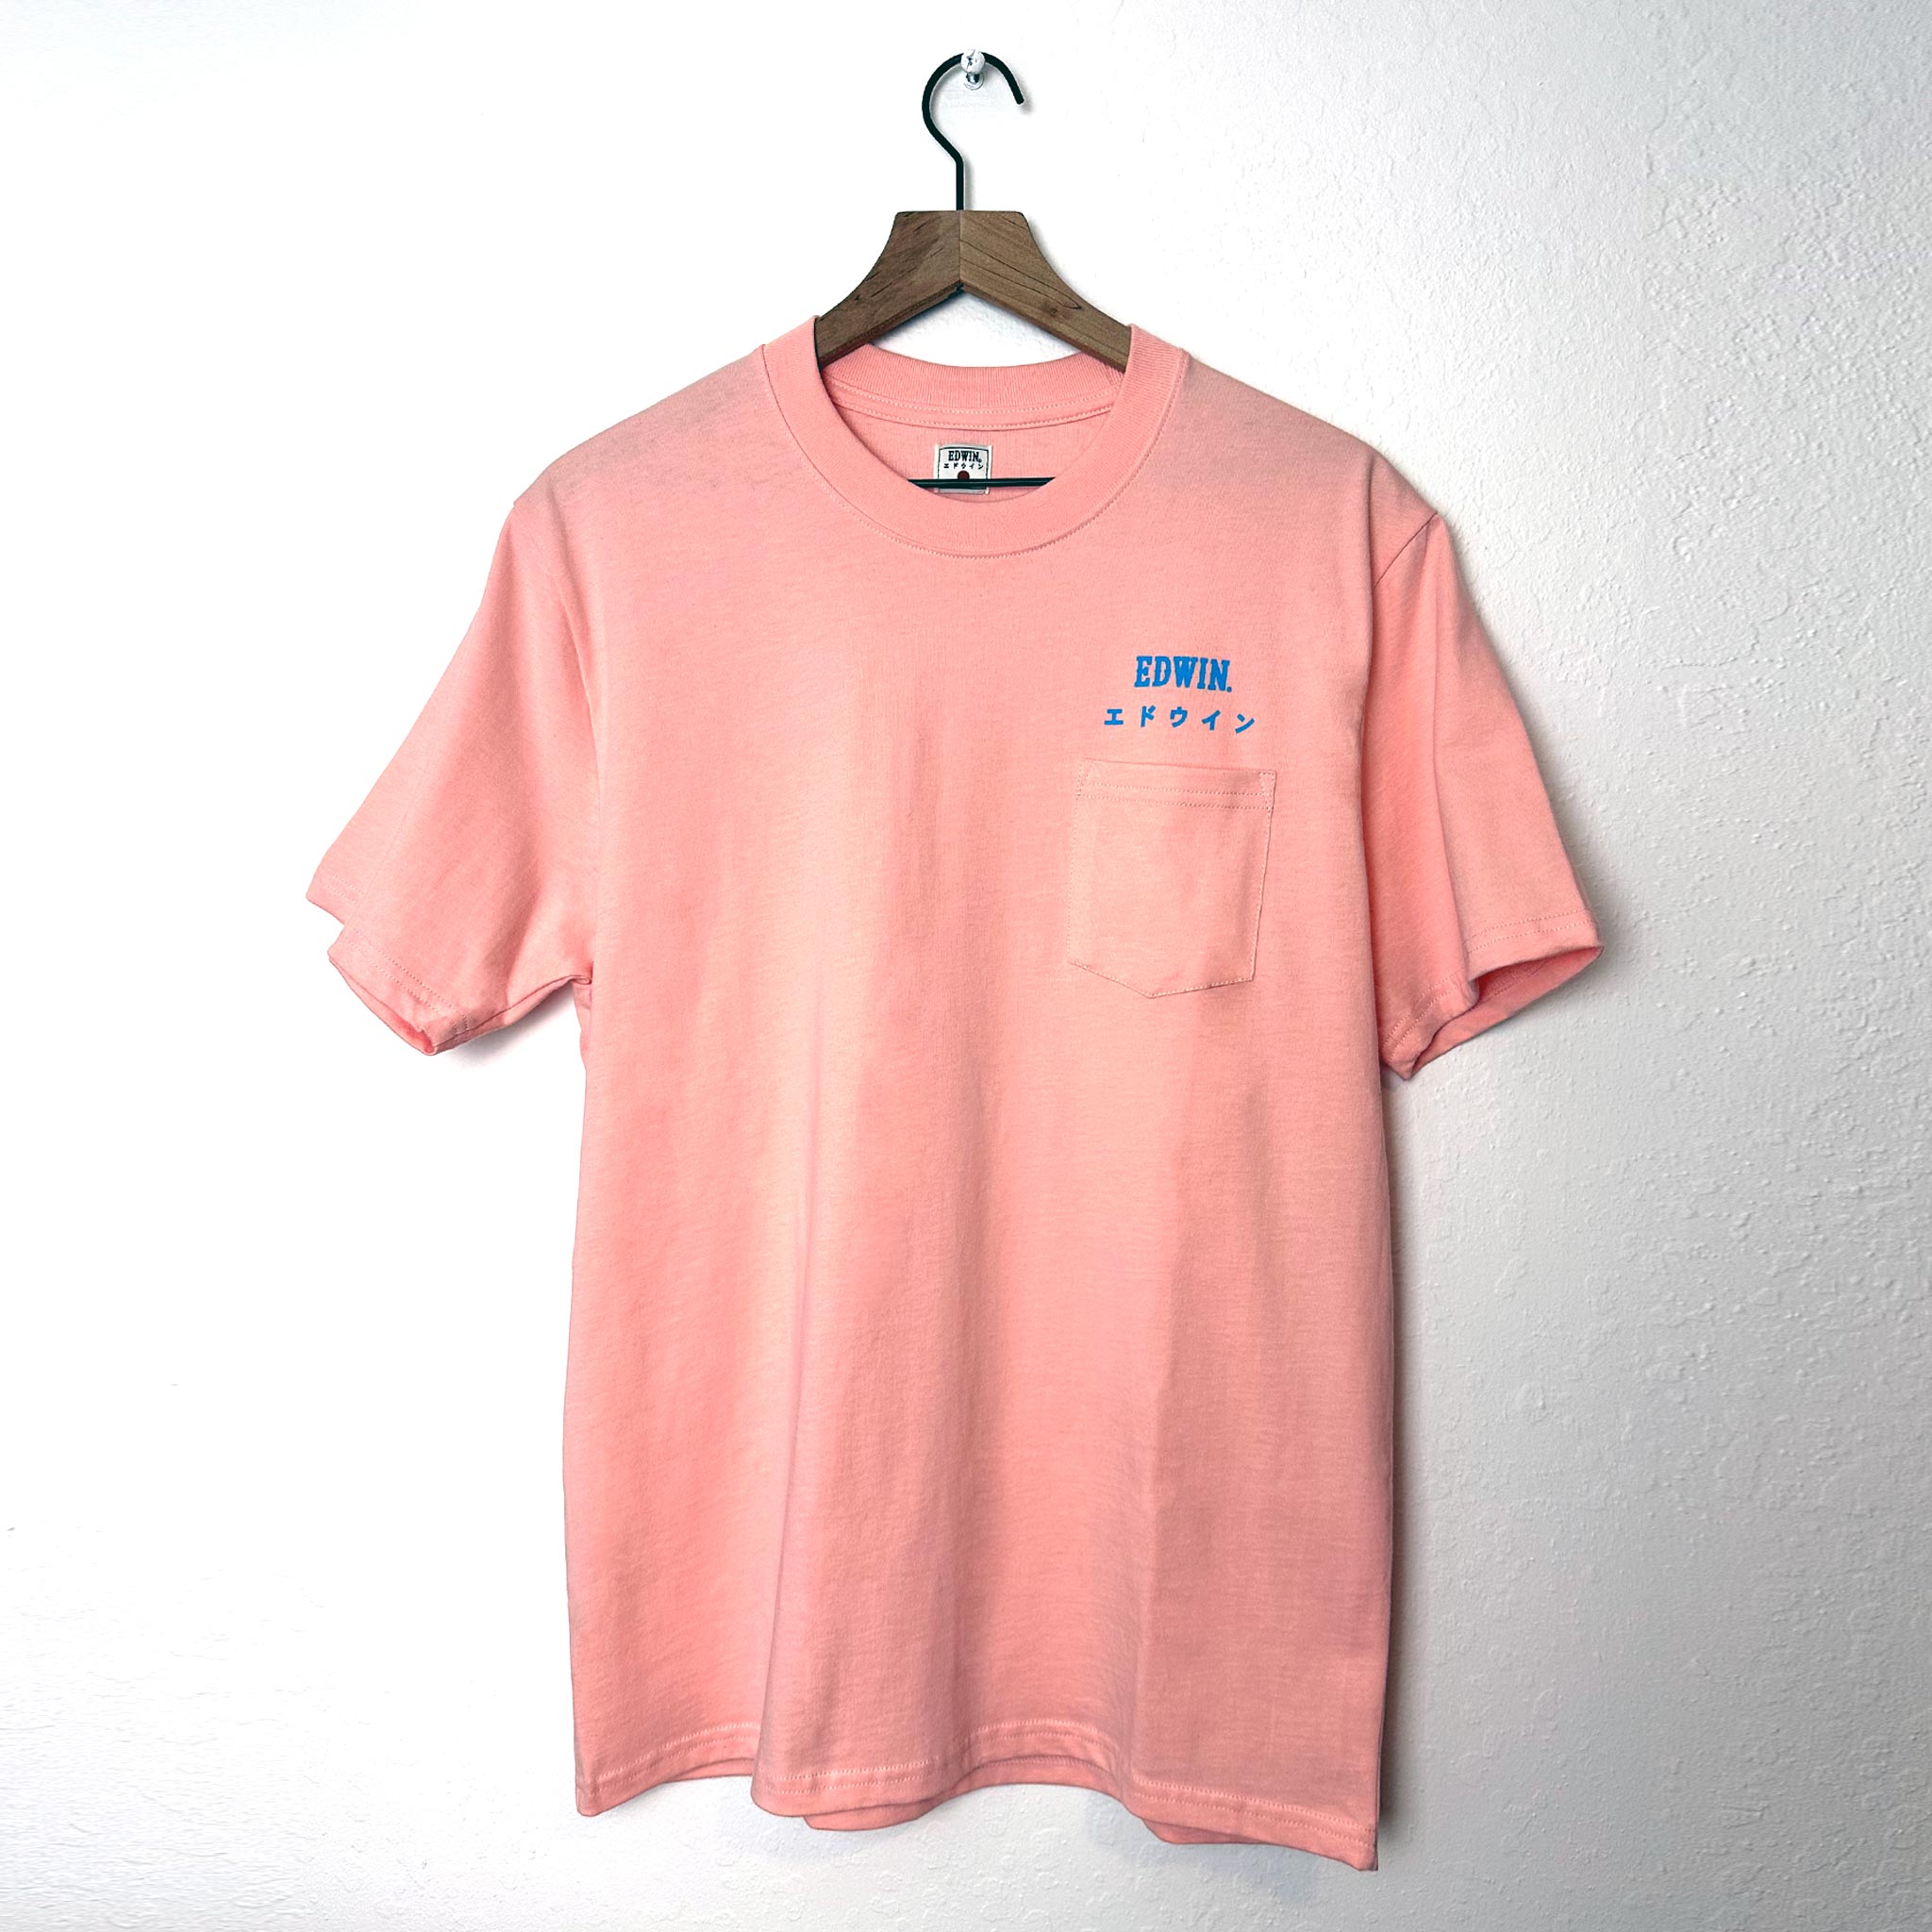 Edwin Short Sleeve Pocket T-Shirt Pink